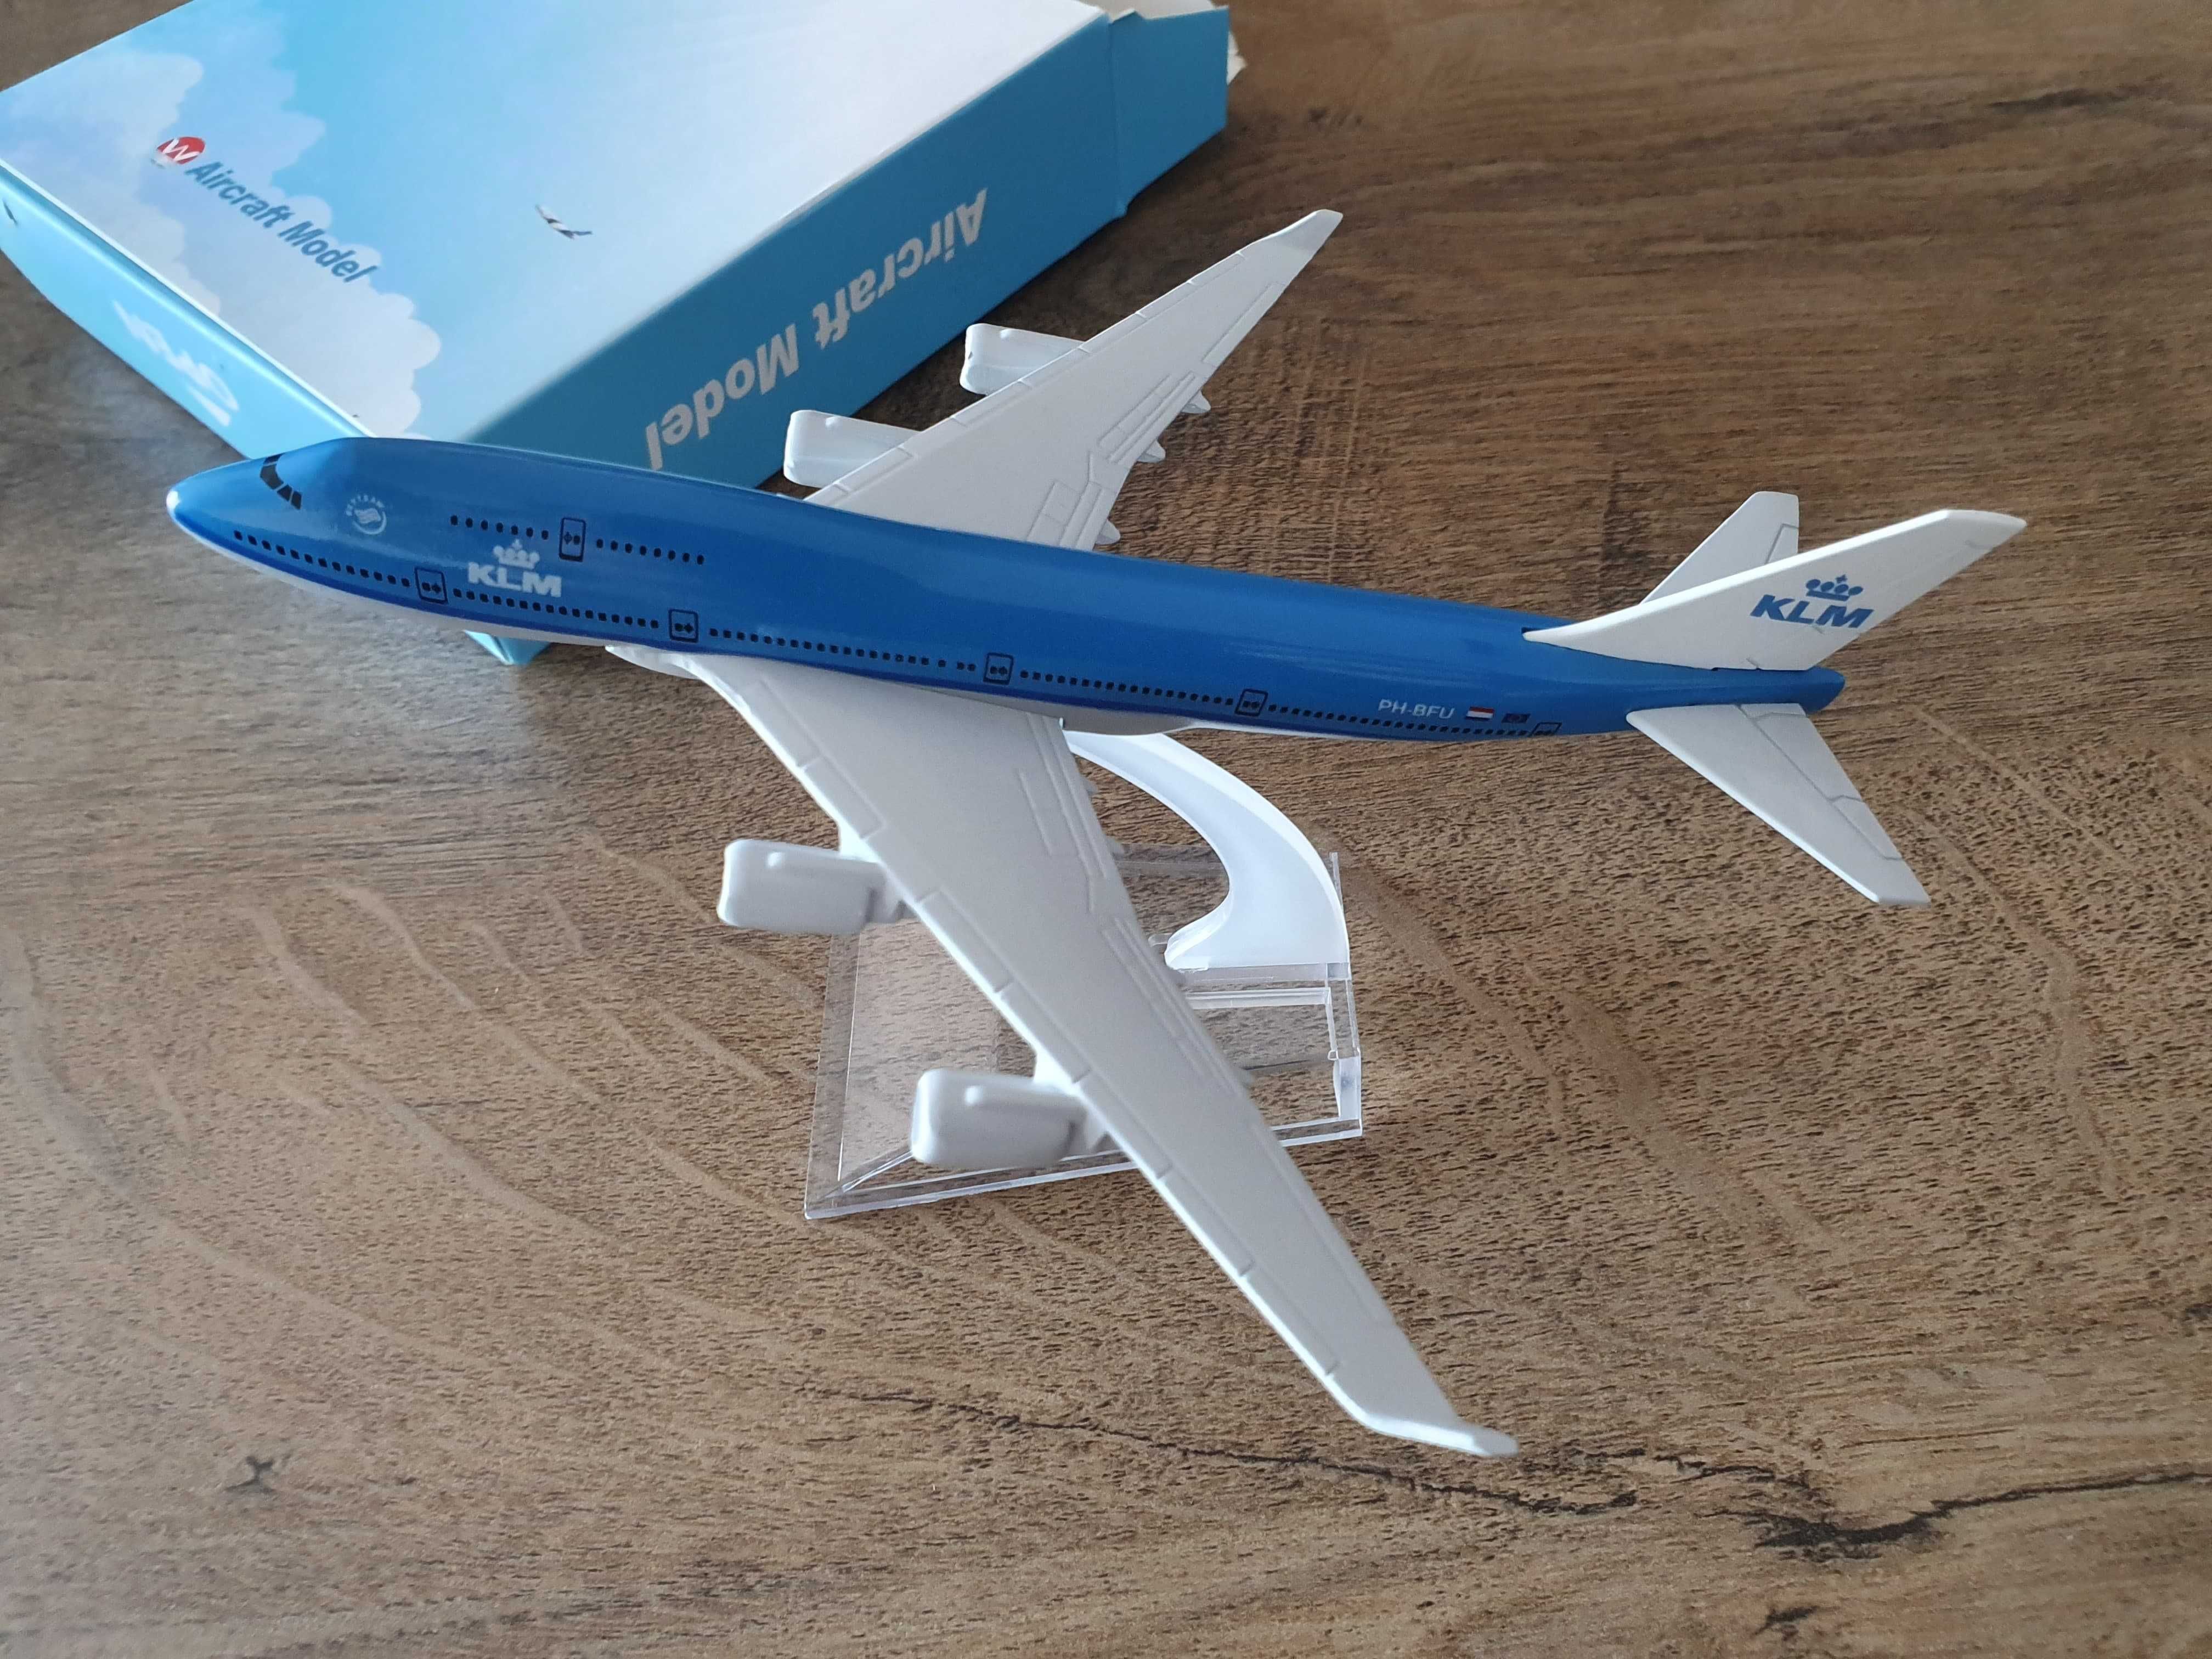 Macheta metalica de avion KLM | Decoratie | Perfect pt cadou